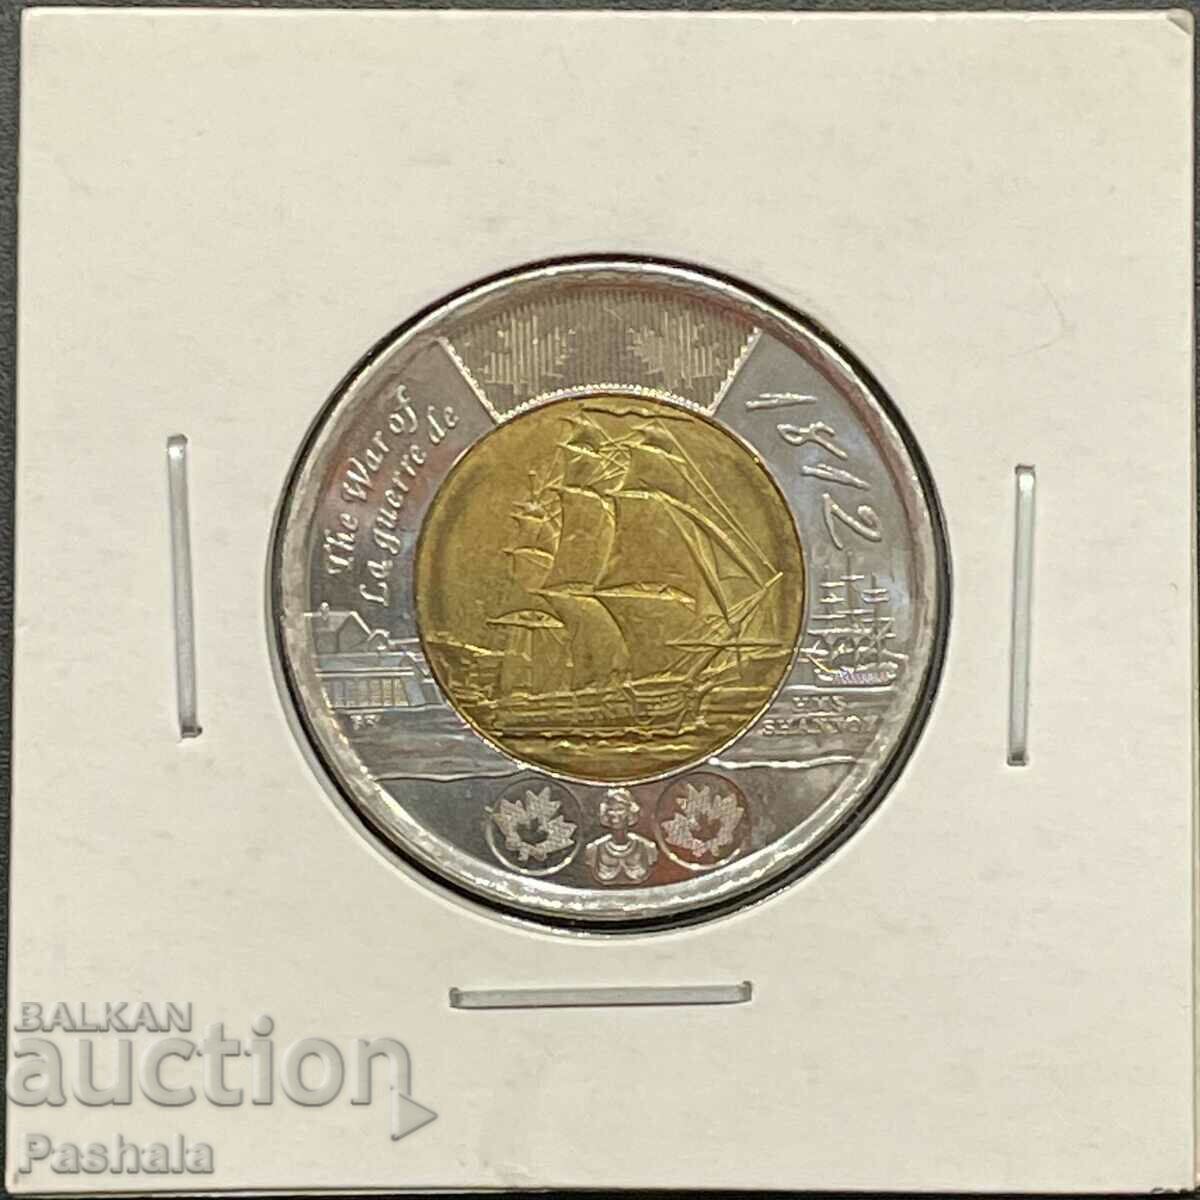 Canada $2 2012